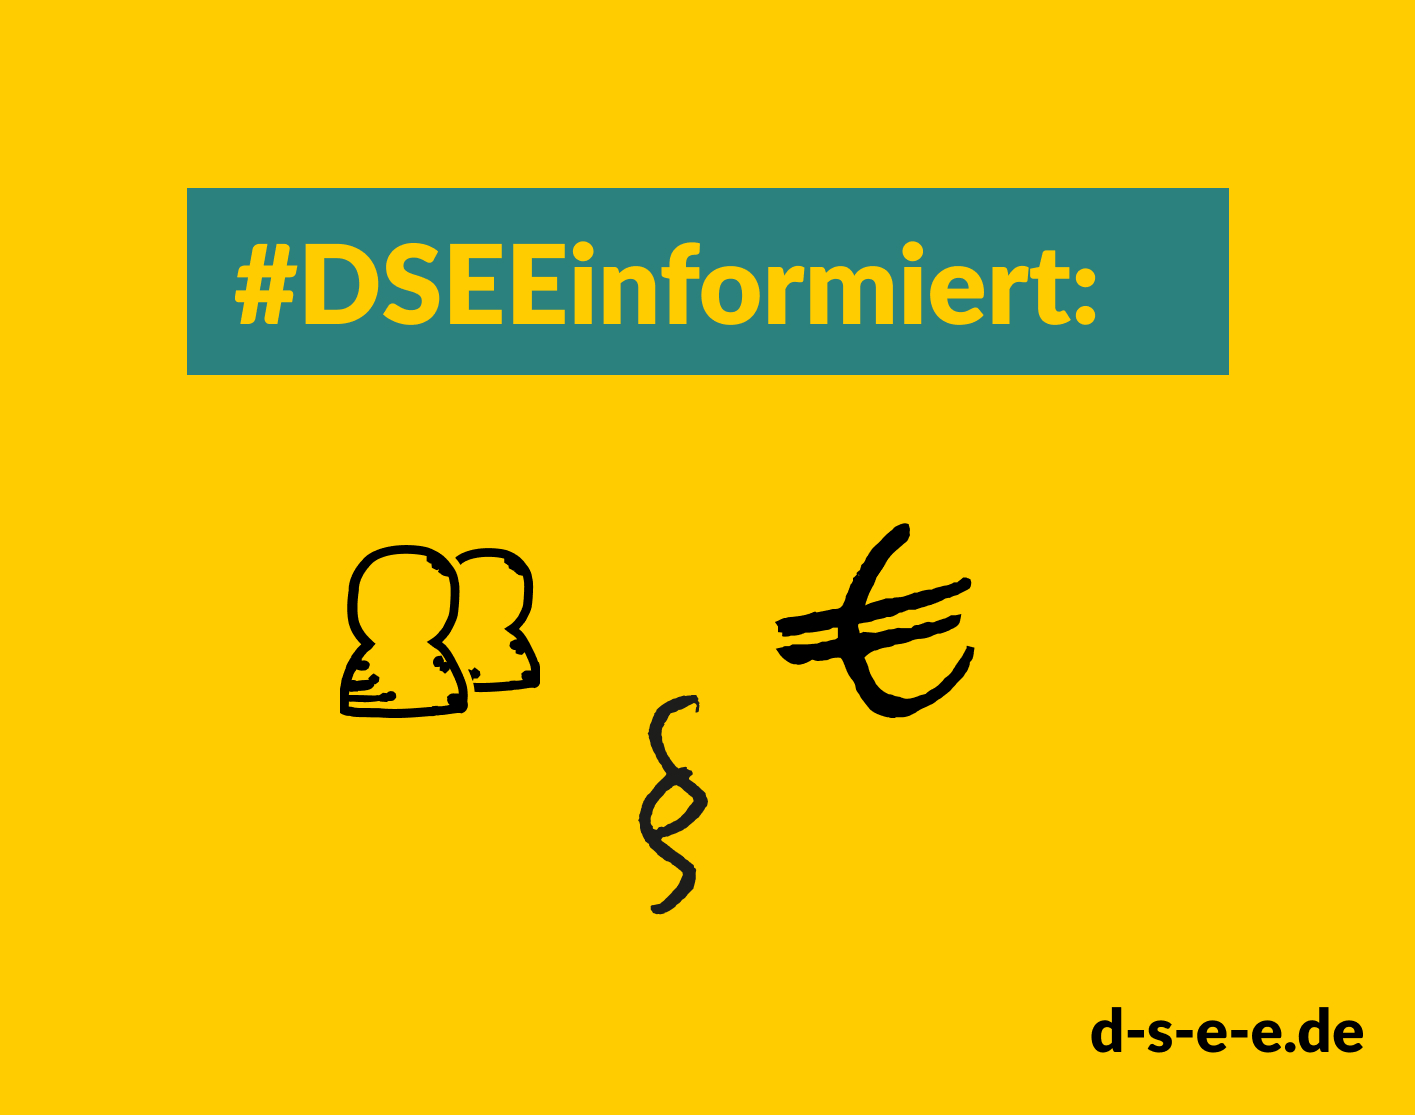 Grafik mit gezeichneten Menschenfiguren, das Eurozeichen und das Paragraphenzeichen. Text: #DSEEinformiert. d-s-e-e.de